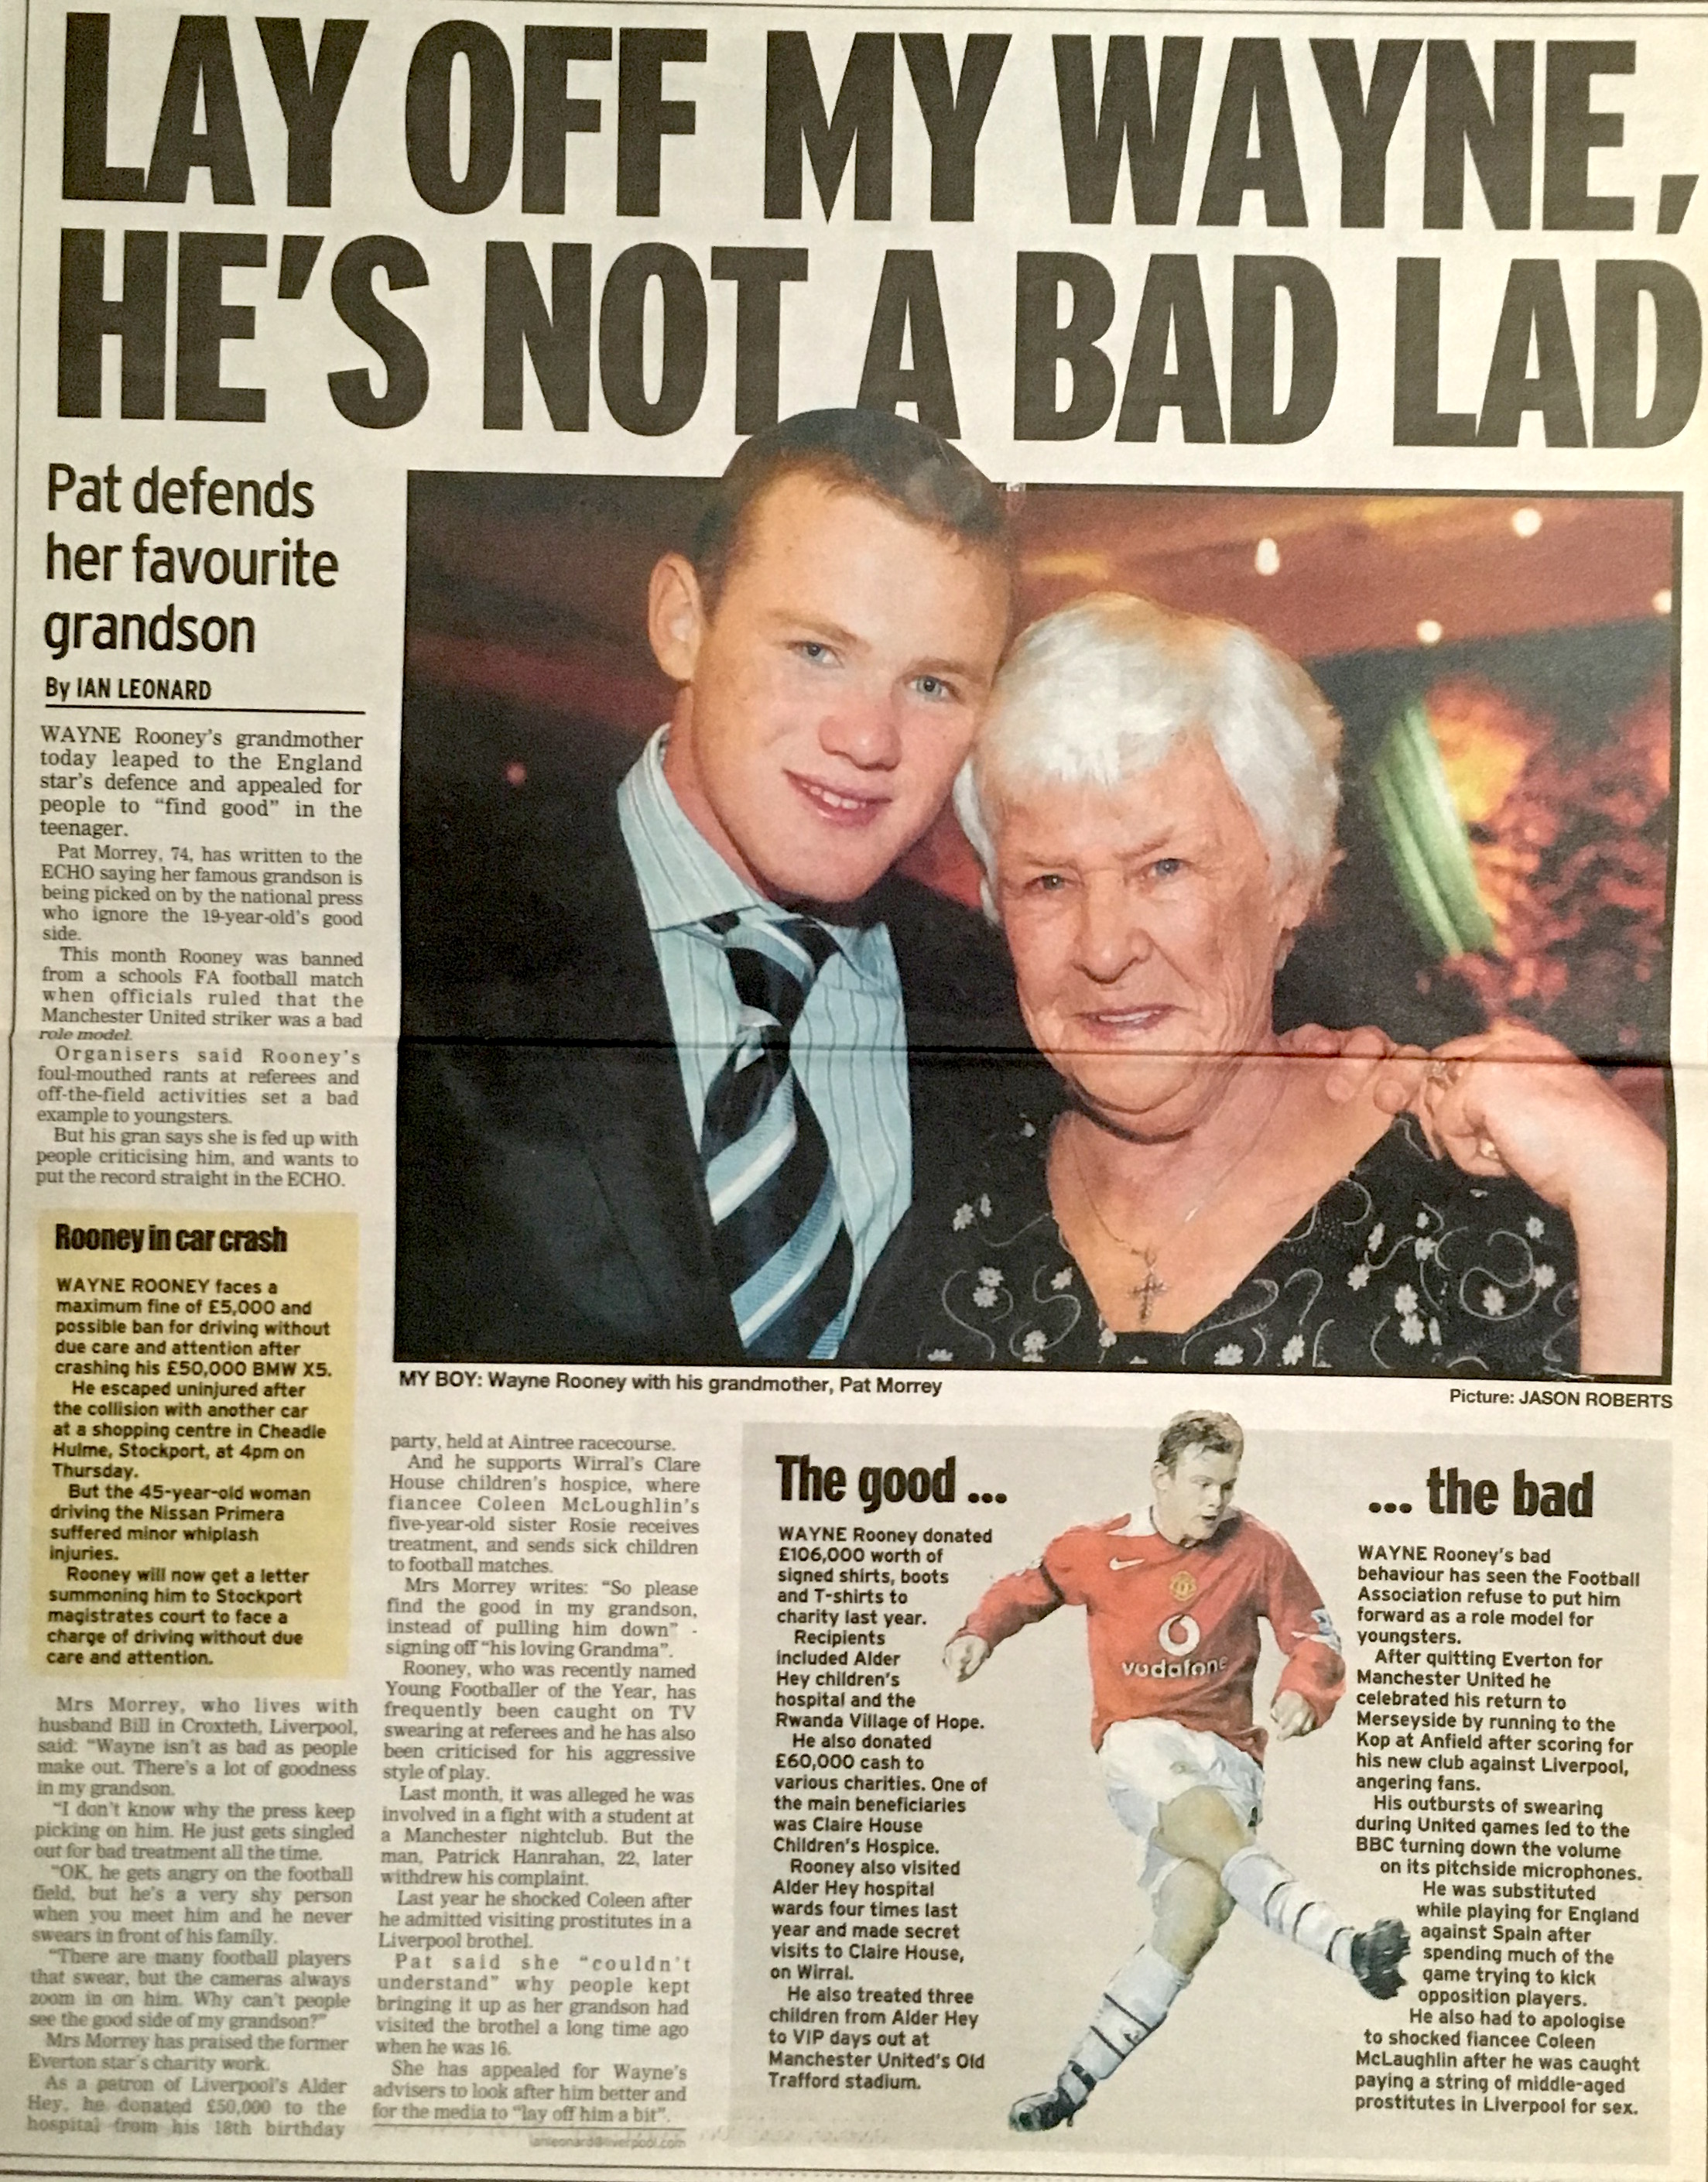 Liverpool Echo: Wayne Rooney's gran speaks out